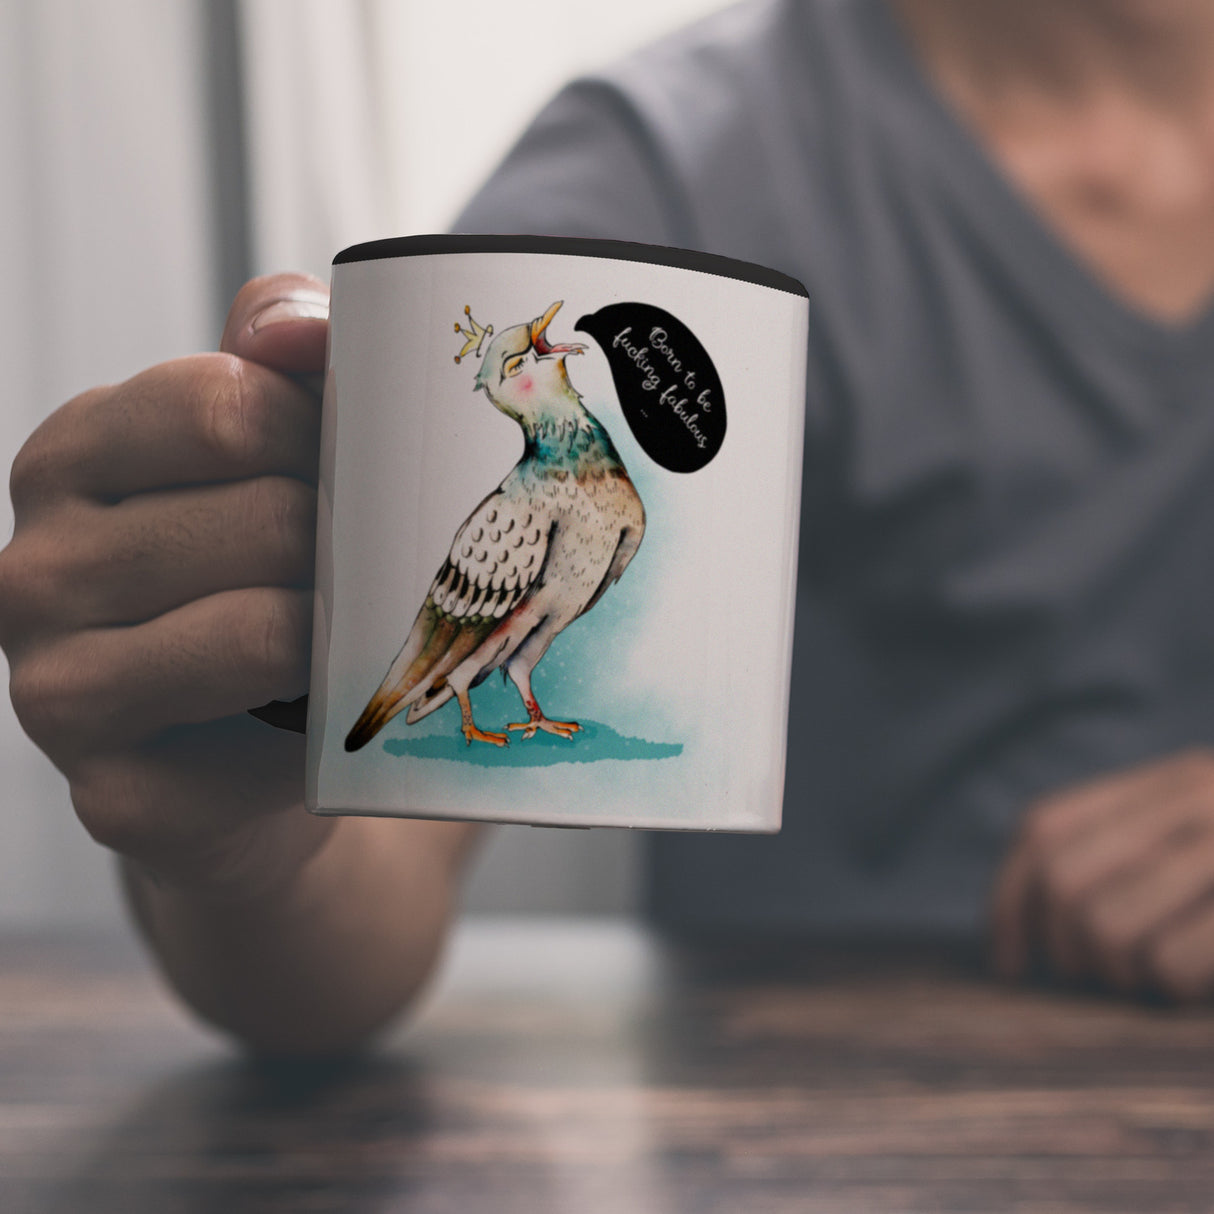 Kaffeebecher mit Tauben Motiv und witzigem Spruch für eine Diva